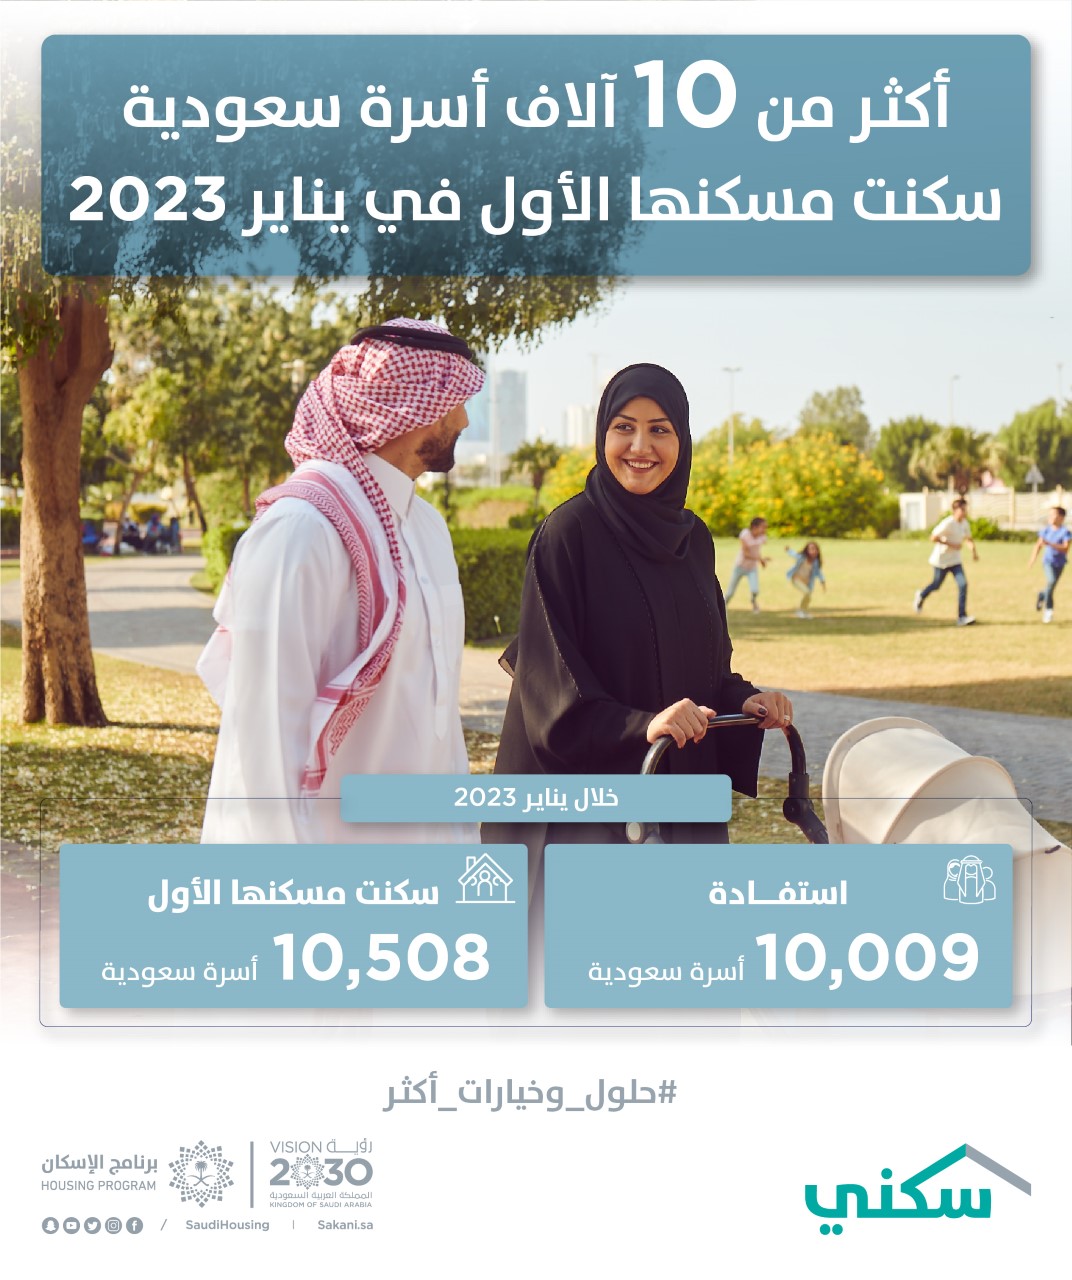 “سكني”: أكثر من 10 آلاف أسرة سعودية سكنت مسكنها الأول في يناير 2023